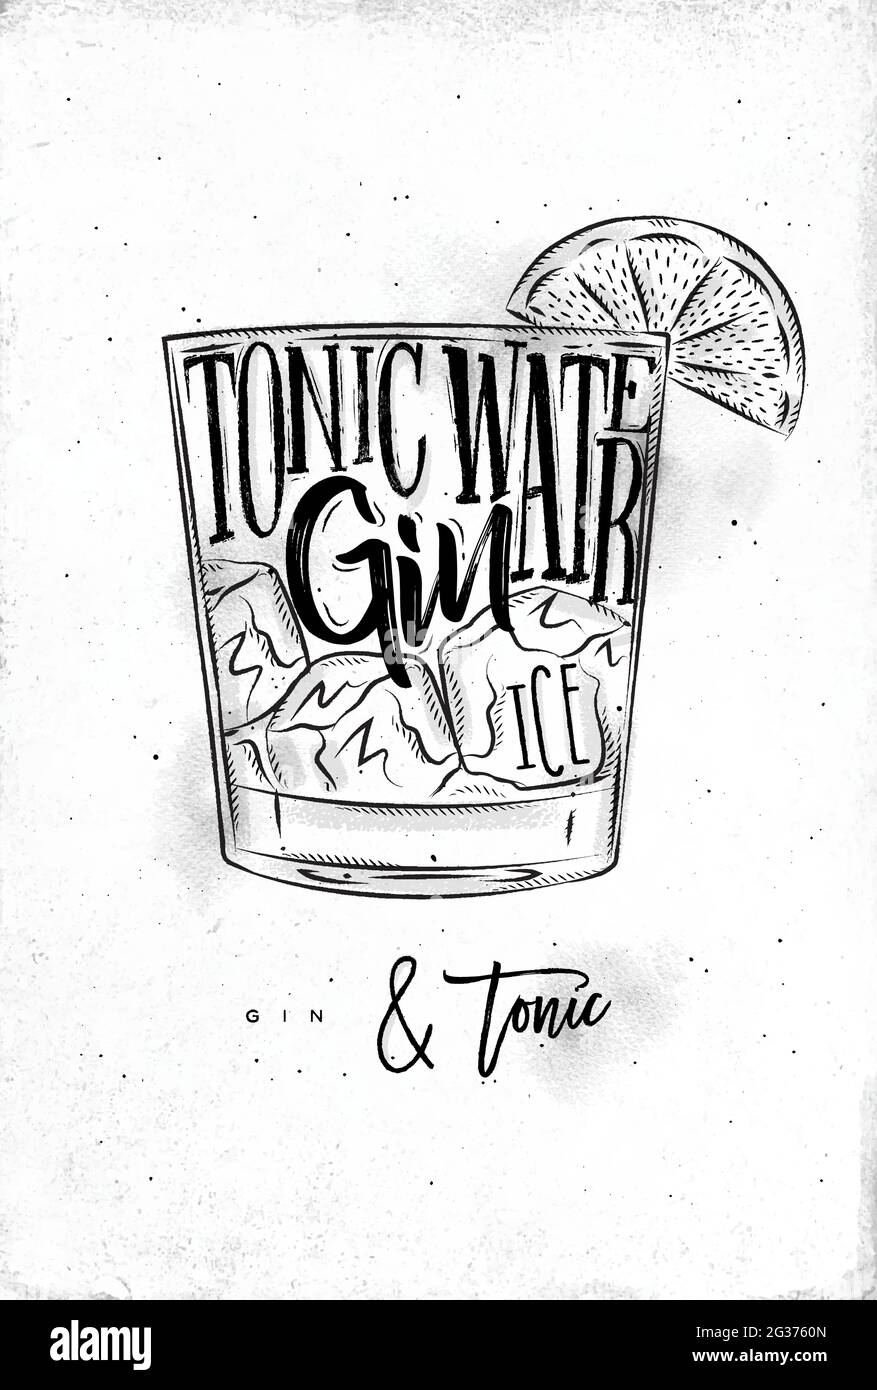 Gin tonique cocktail lettering tonique eau, gin, glace dans le style graphique vintage dessin sur fond de papier sale Illustration de Vecteur